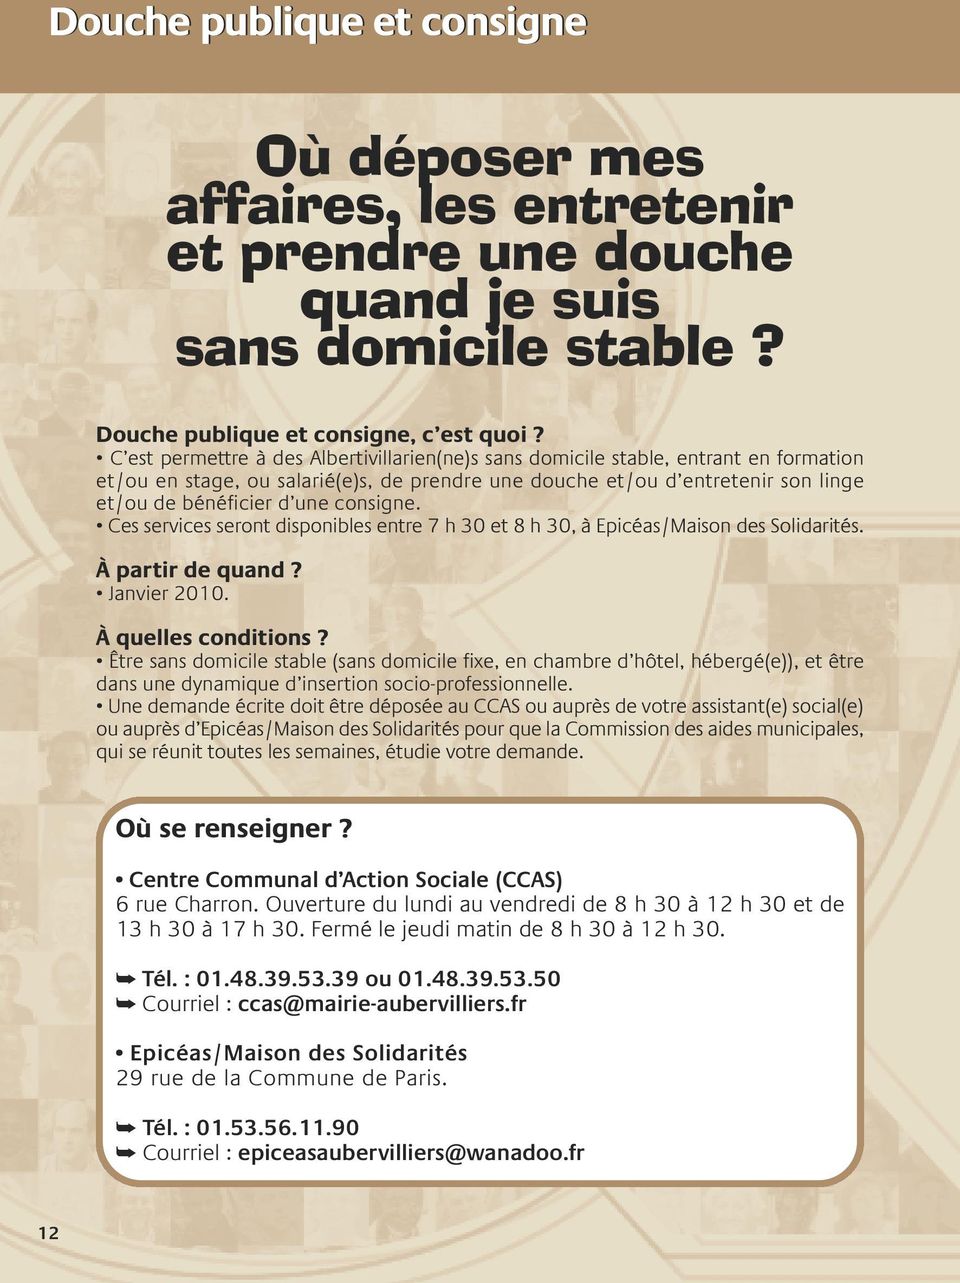 consigne. Ces services seront disponibles entre 7 h 30 et 8 h 30, à Epicéas/Maison des Solidarités. à partir de quand? Janvier 2010. à quelles conditions?